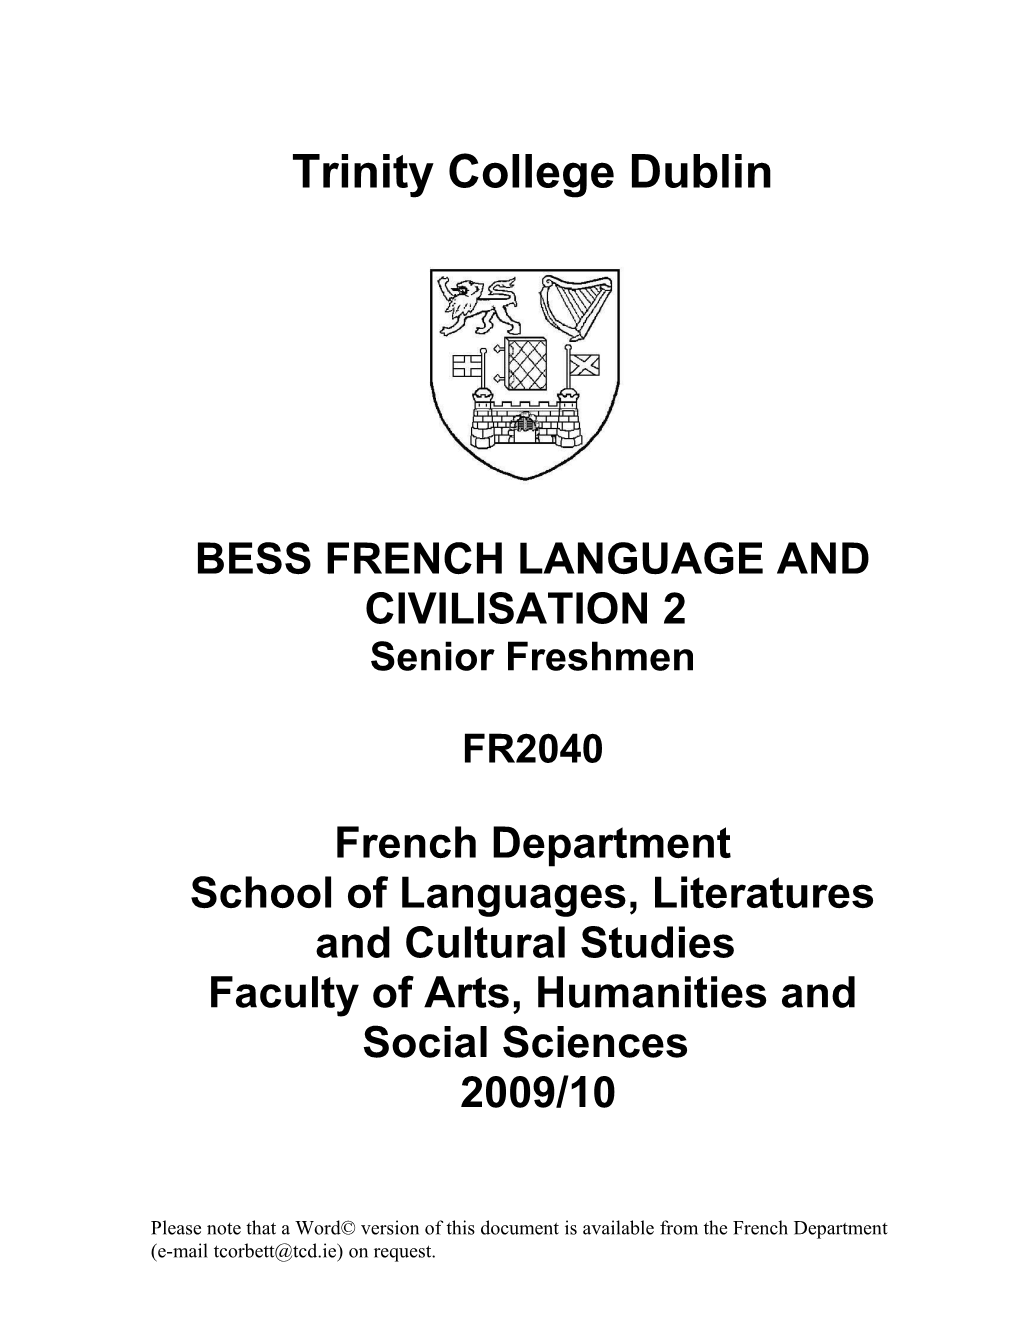 Trinity College Dublin s1